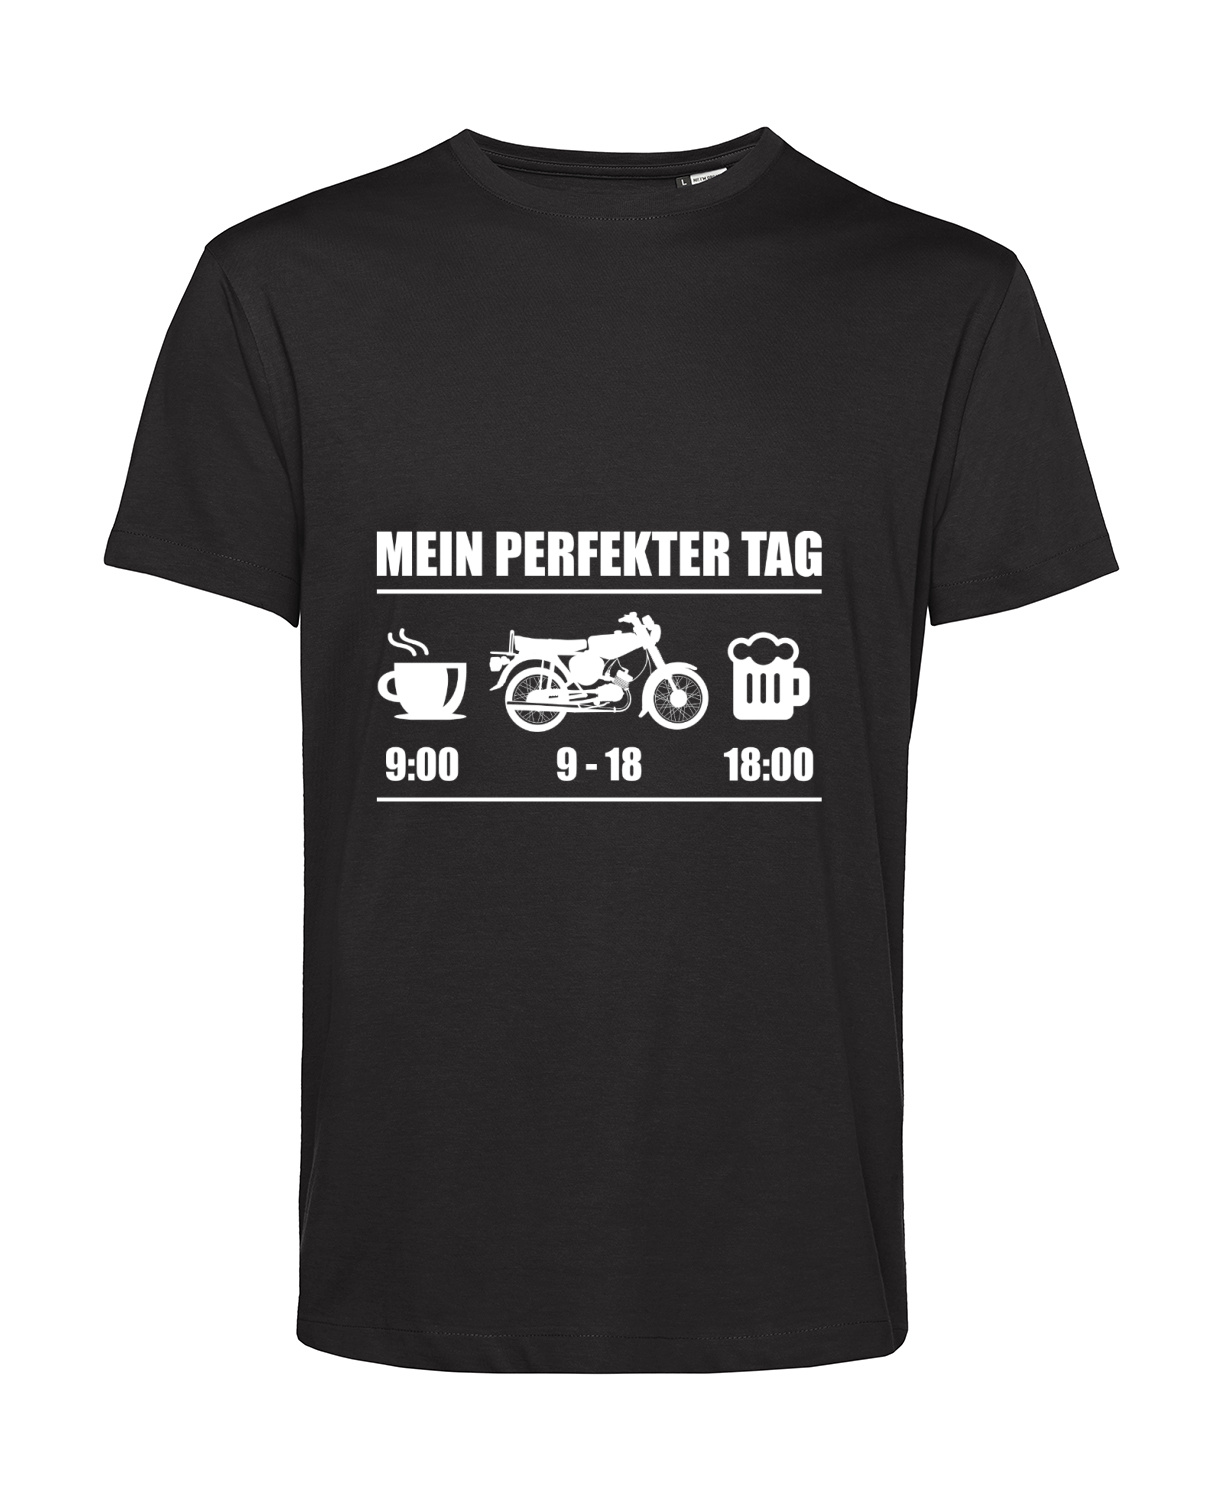 Nachhaltiges T-Shirt Herren 2Takter - Mein perfekter Tag S50